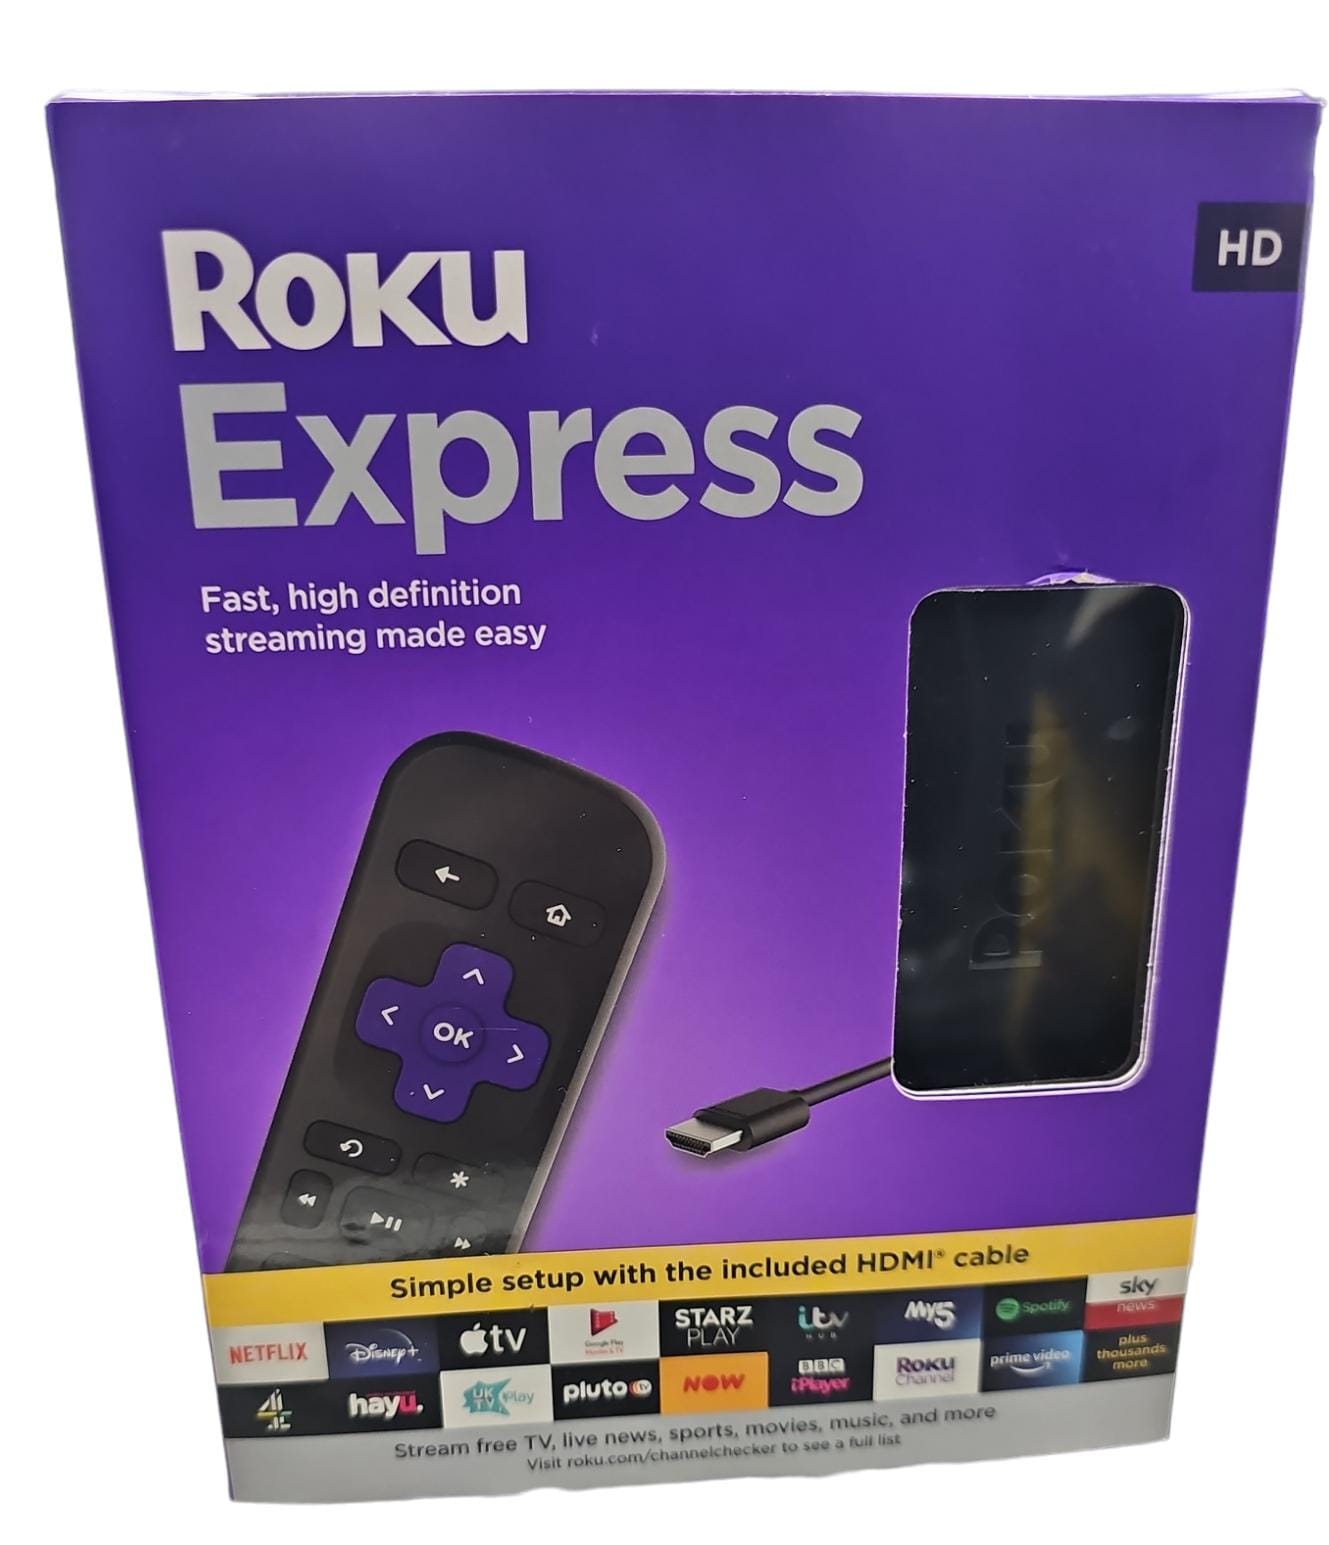 Roku express boxed